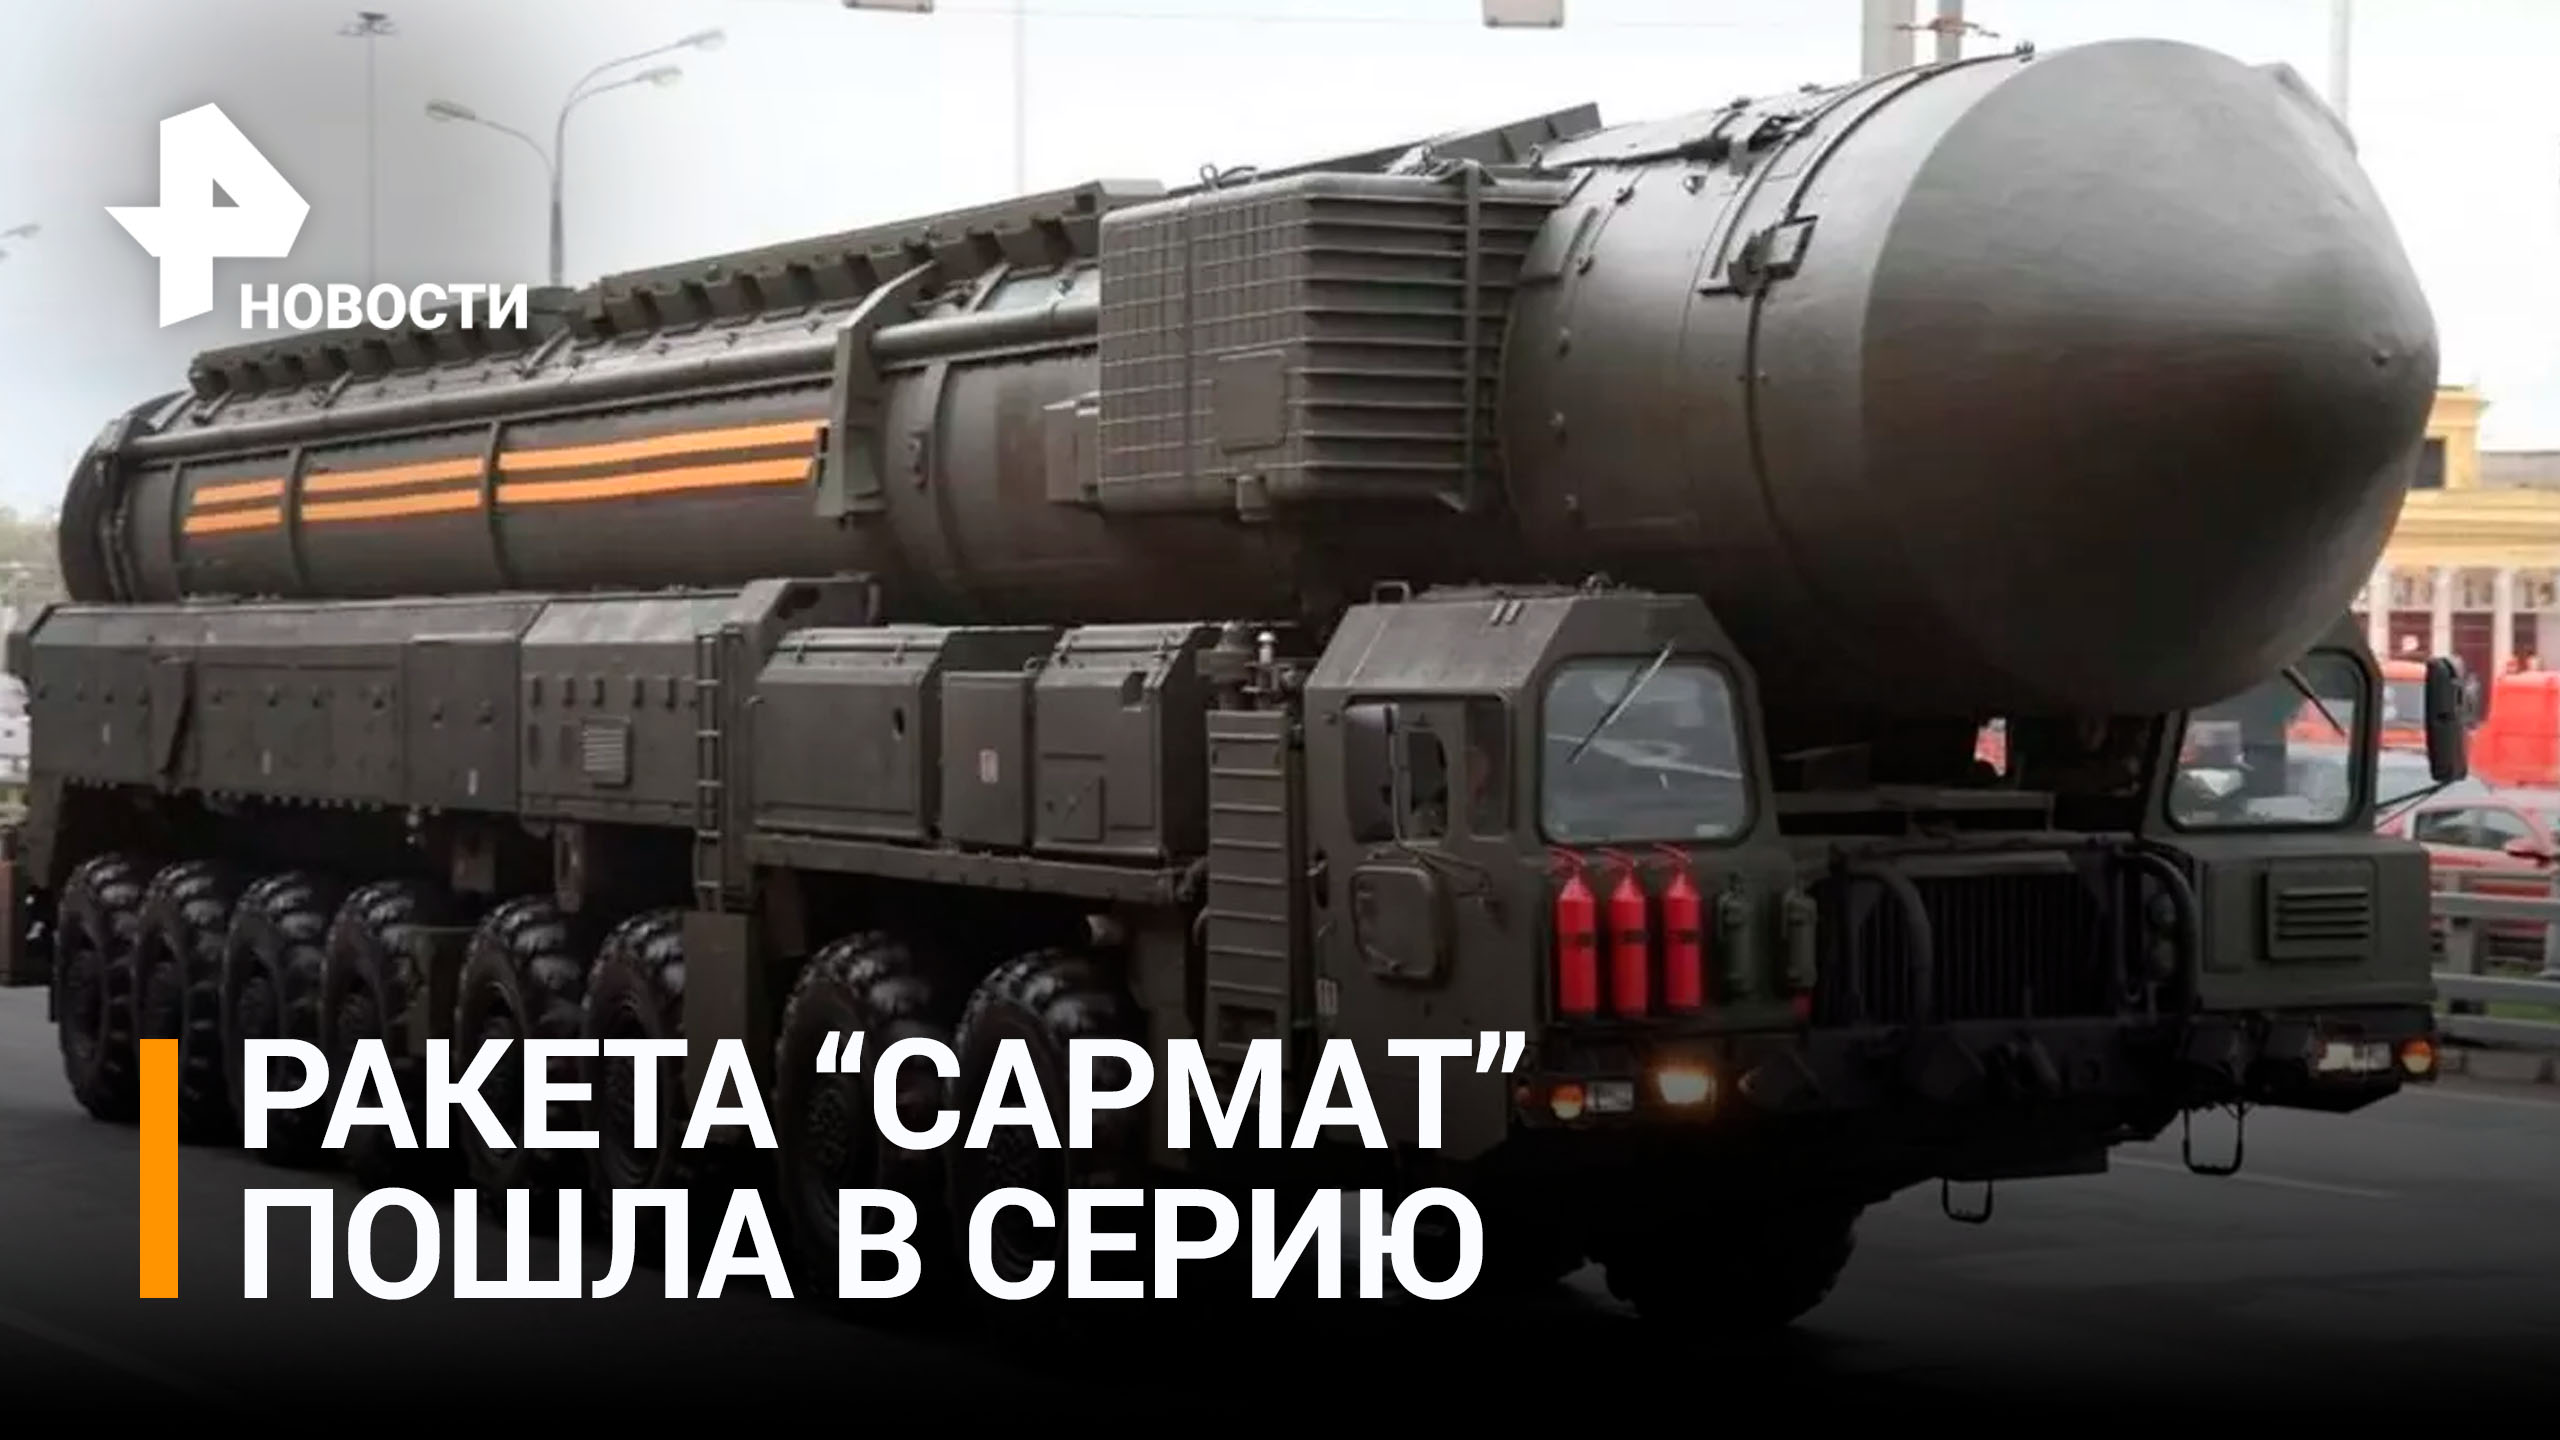 Ракетный комплекс "Сармат" начали серийно производить в России / РЕН Новости